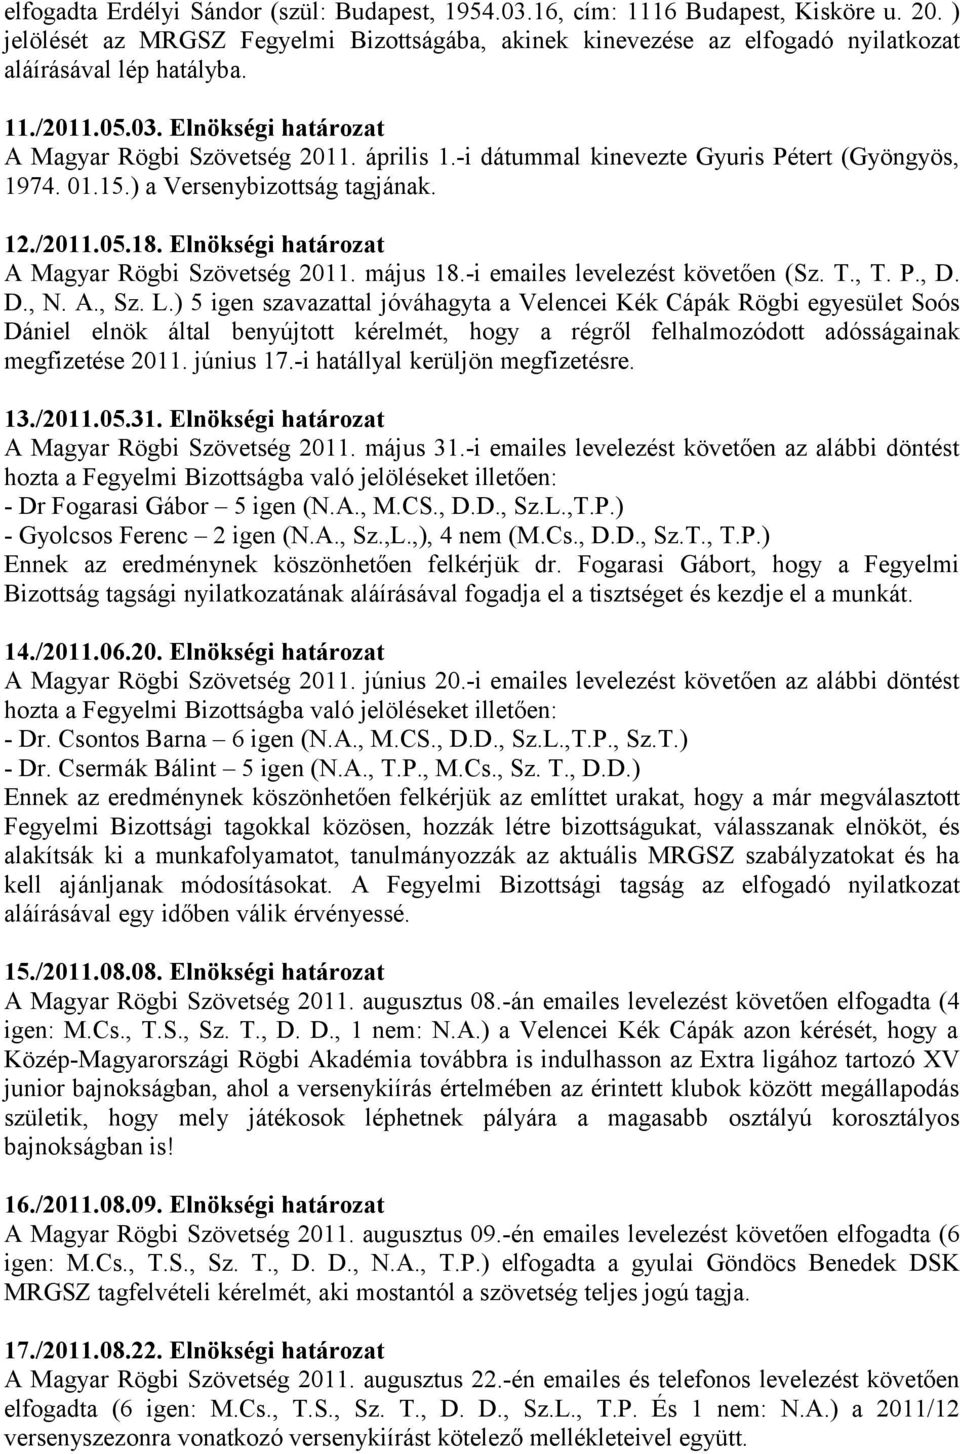 Elnökségi határozat A Magyar Rögbi Szövetség 2011. május 18.-i emailes levelezést követően (Sz. T., T. P., D. D., N. A., Sz. L.